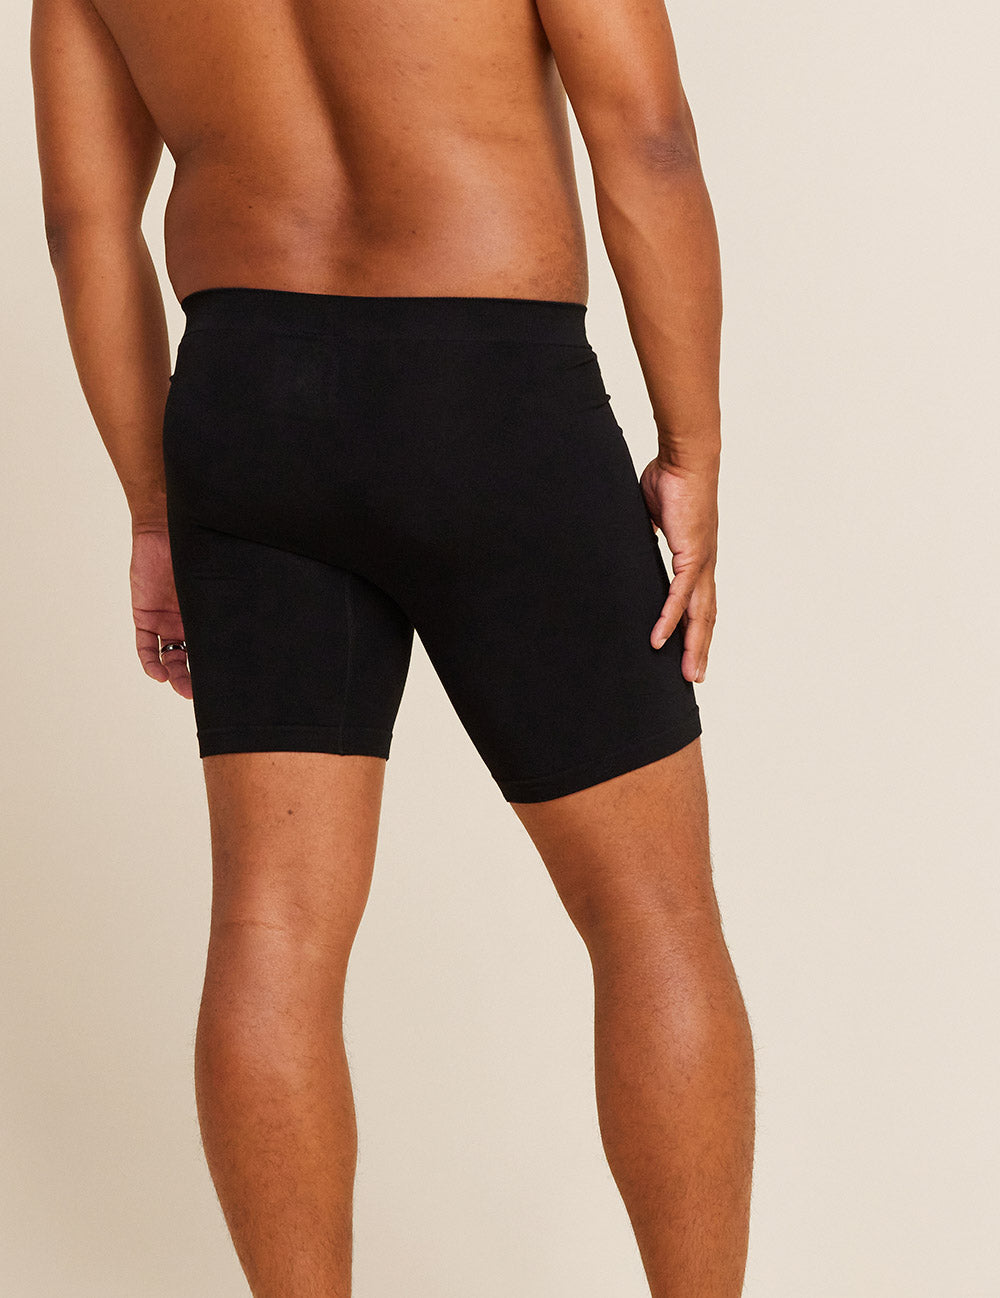 HKEJIAOI Long Leg Boxer Briefs for Men Men's Underwear Cotton Large Size  Men's Boxer Underpants Extra Long Sport Solid Color 